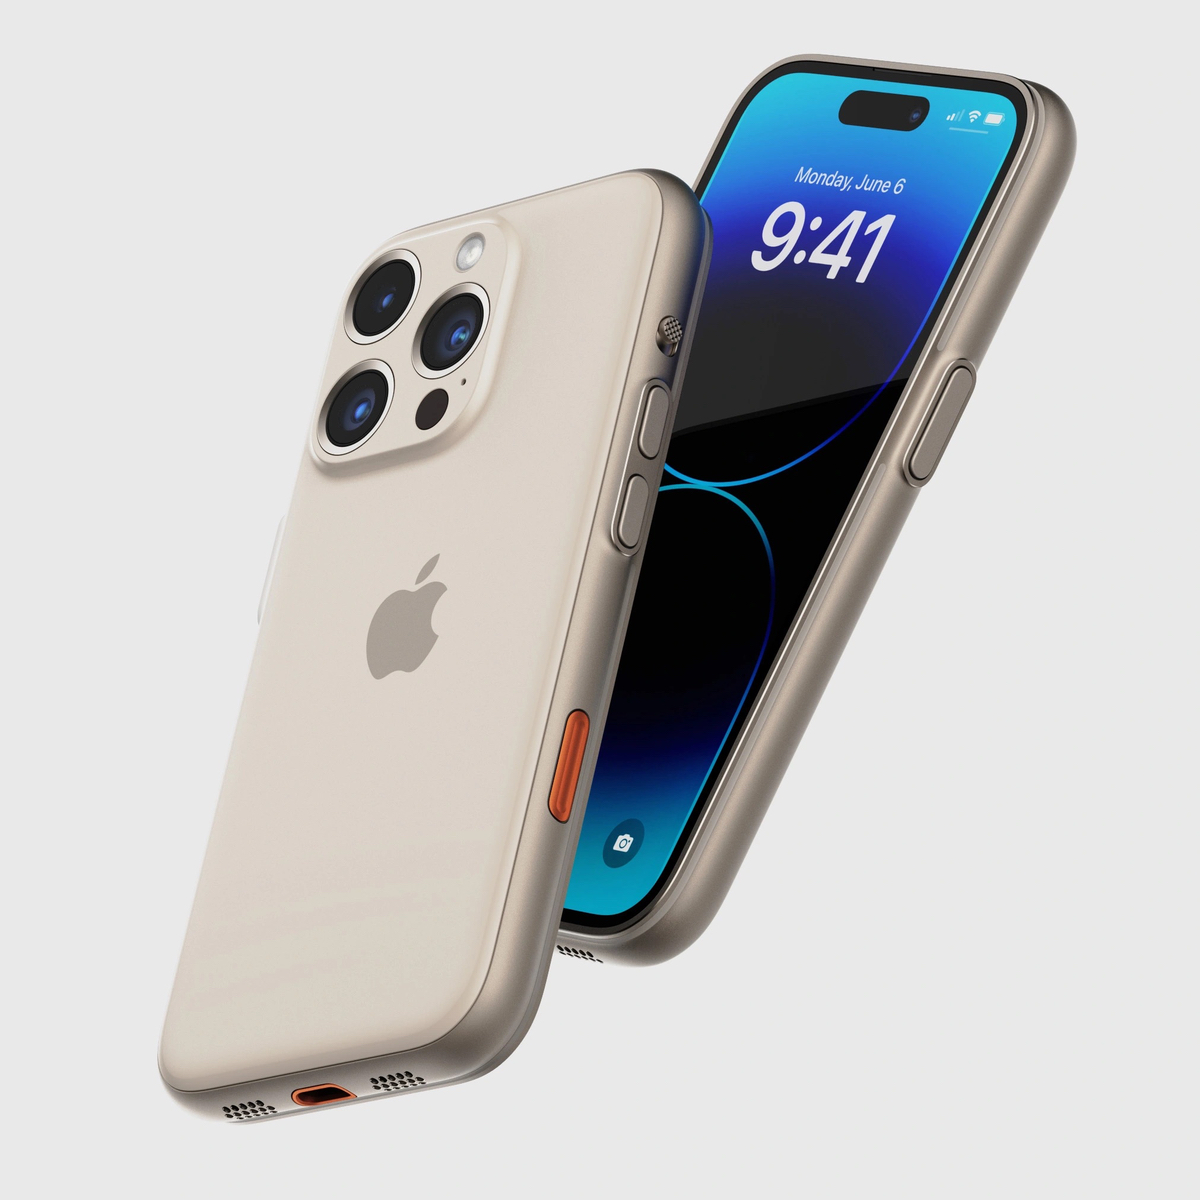 Ý tưởng: iPhone Ultra mà đang đồn là Apple sẽ ra mắt, xịn hơn iPhone Pro